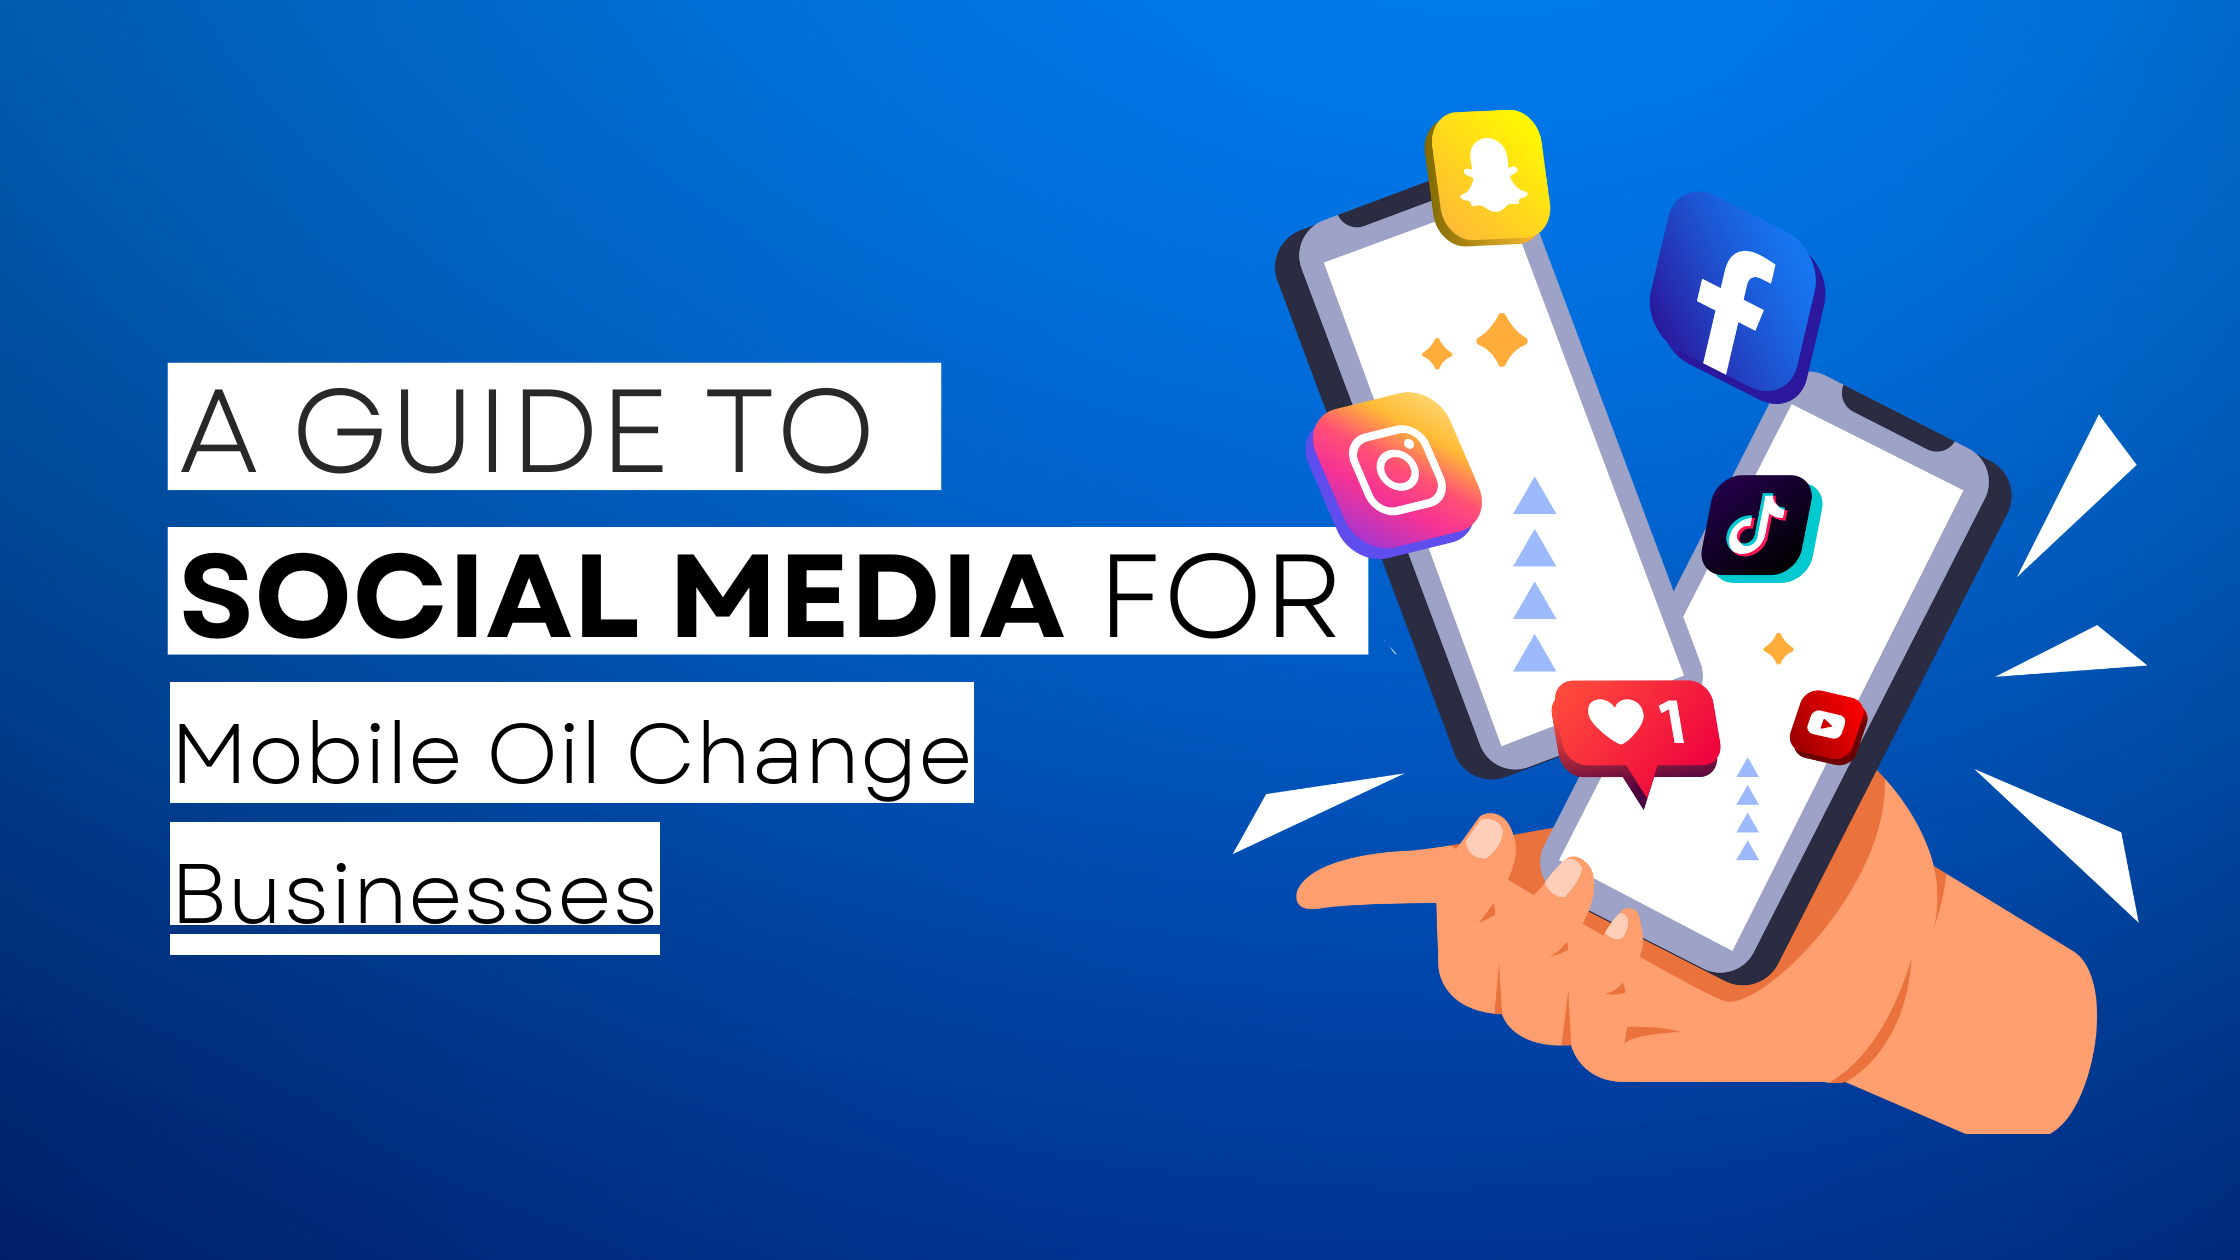 How to start Mobile Oil Change  on social media